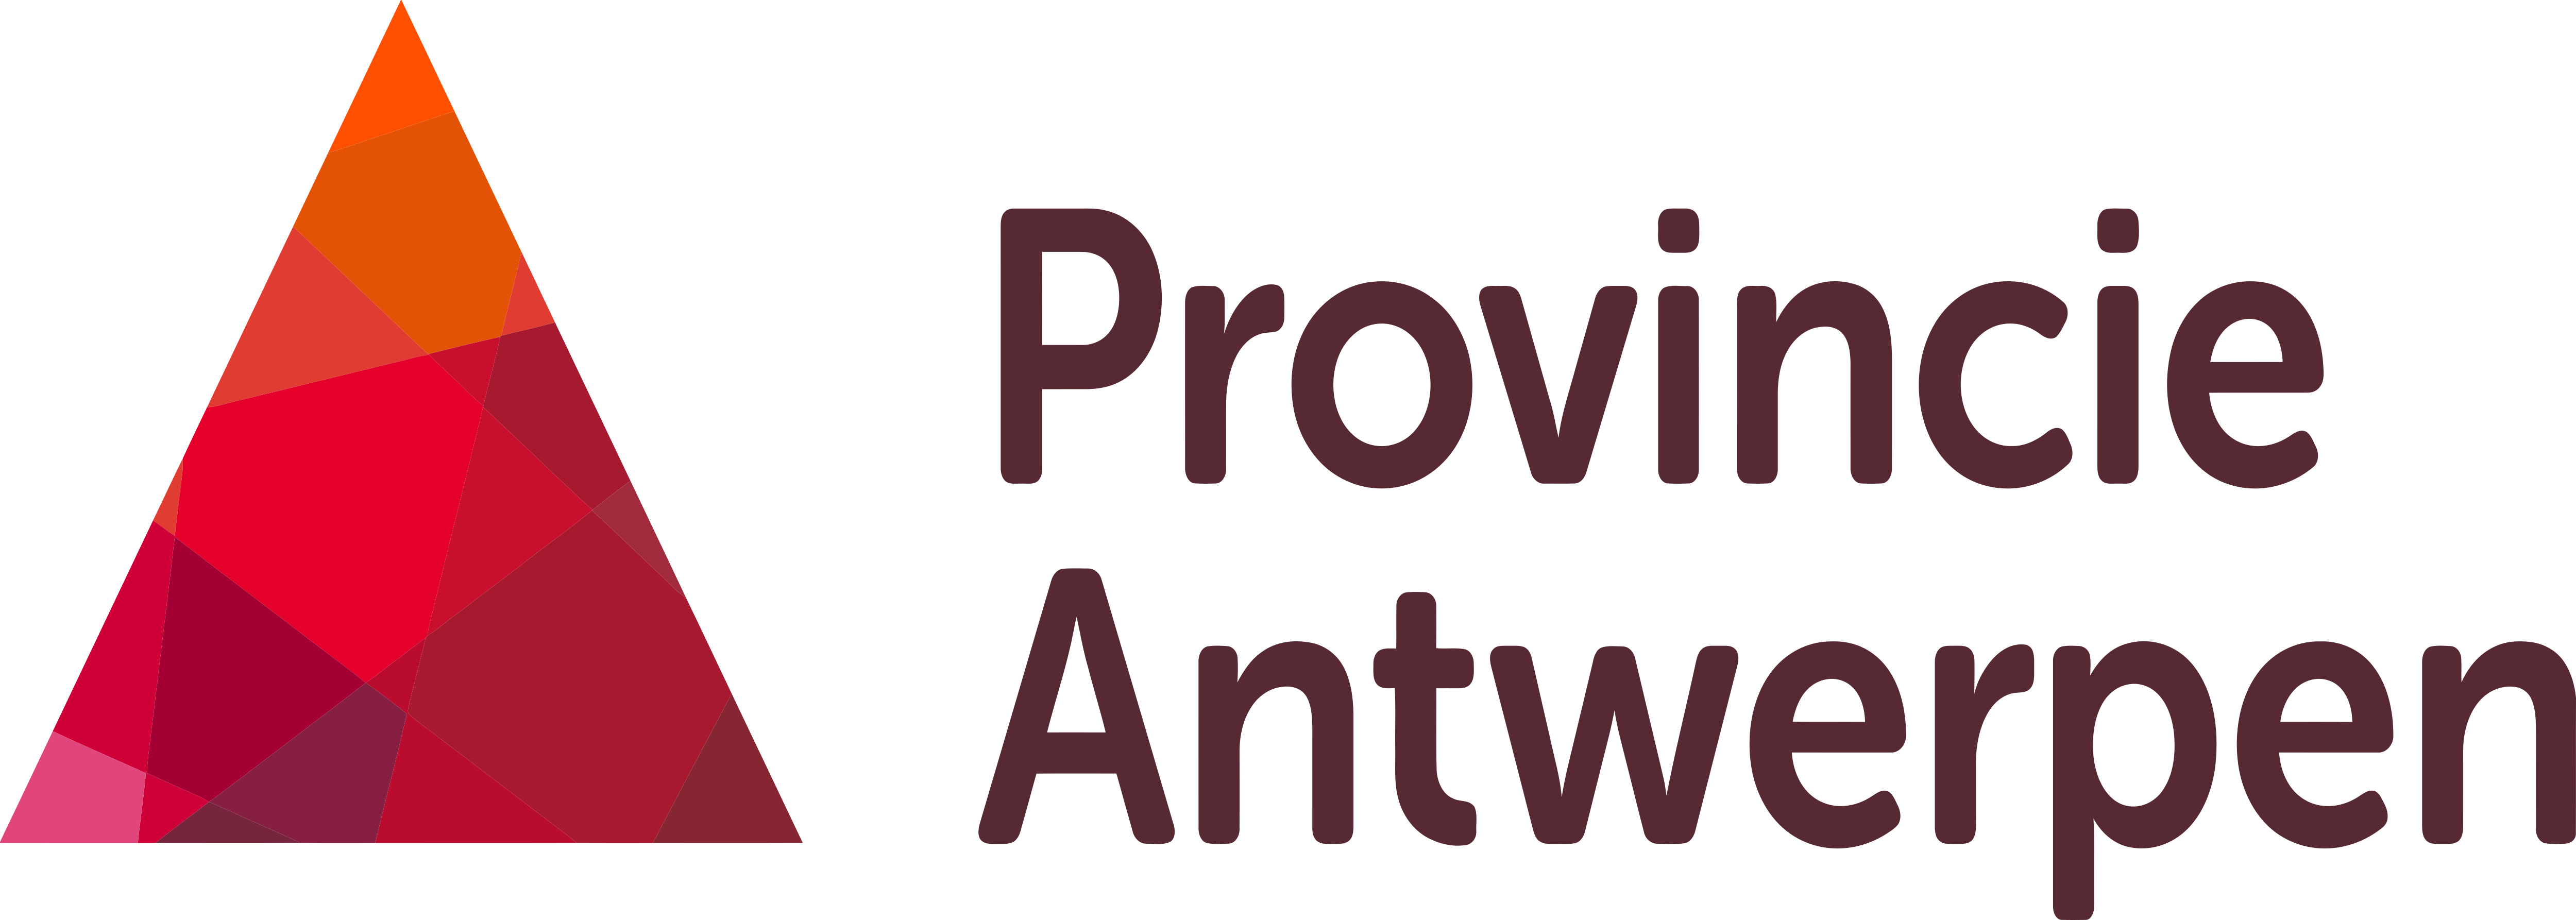 Provincie Antwerpen – Logos Download